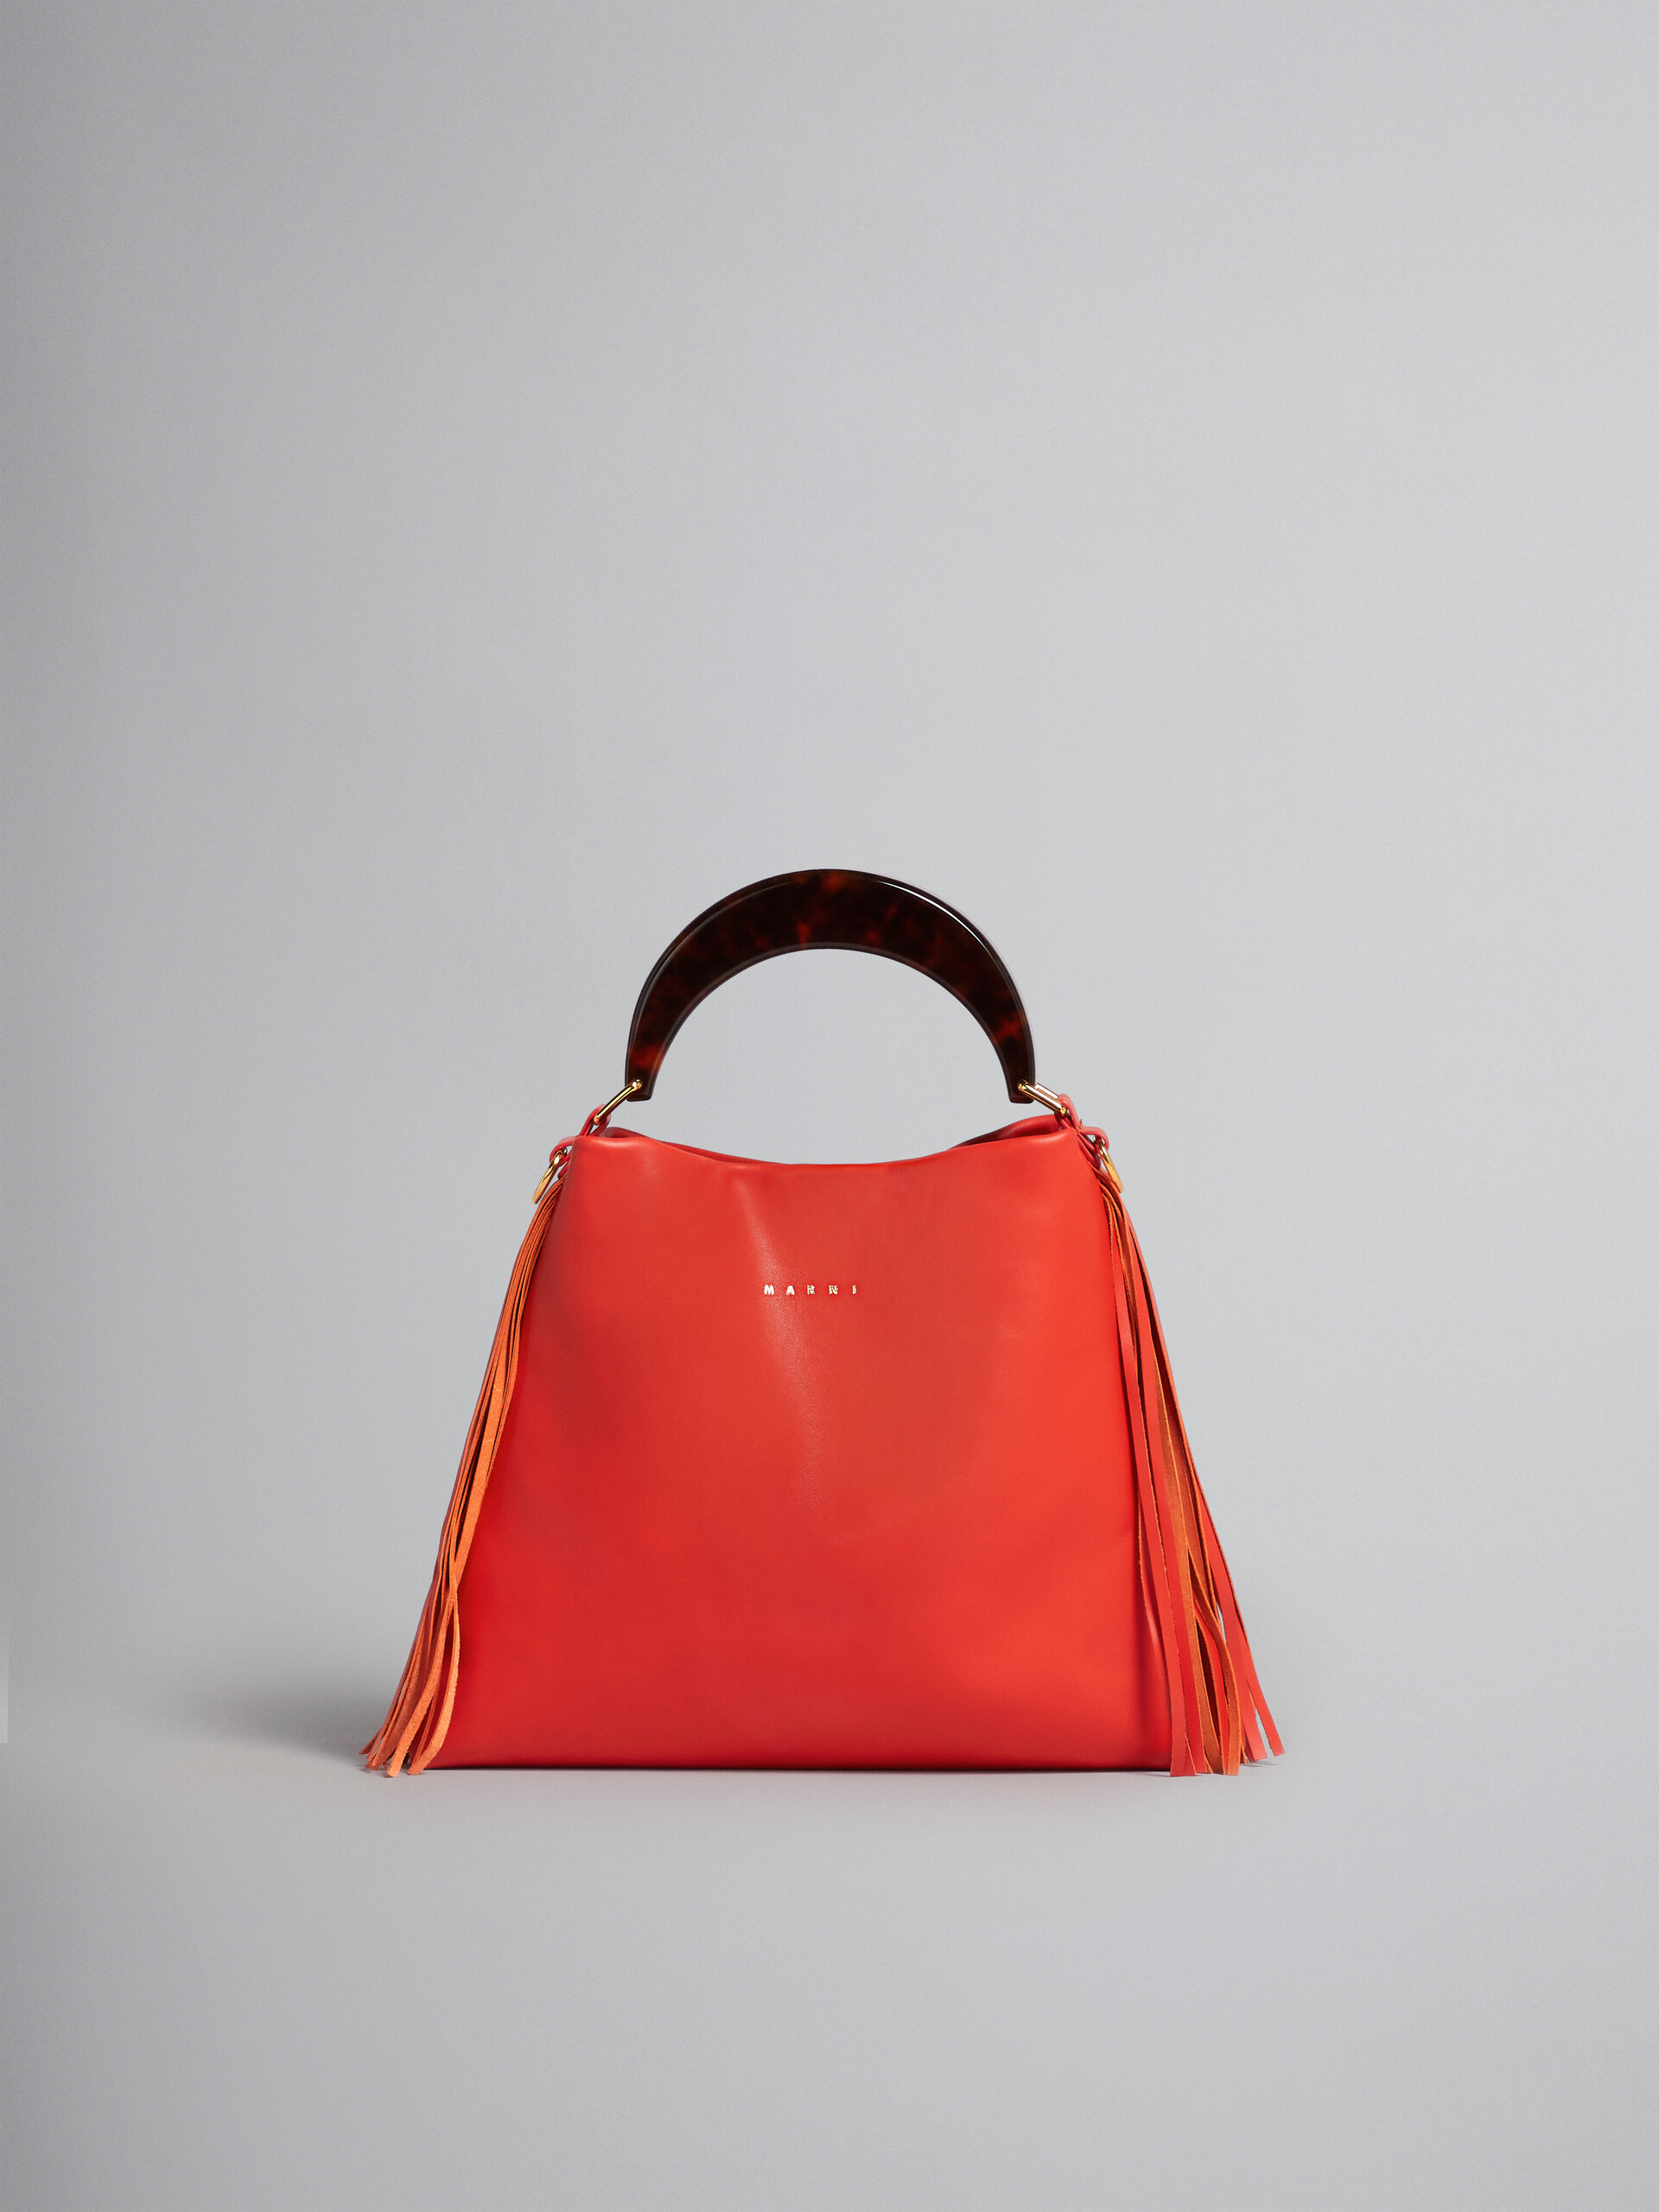 Venice Small Bag in orange leather with fringes - Shoulder Bag - Image 1